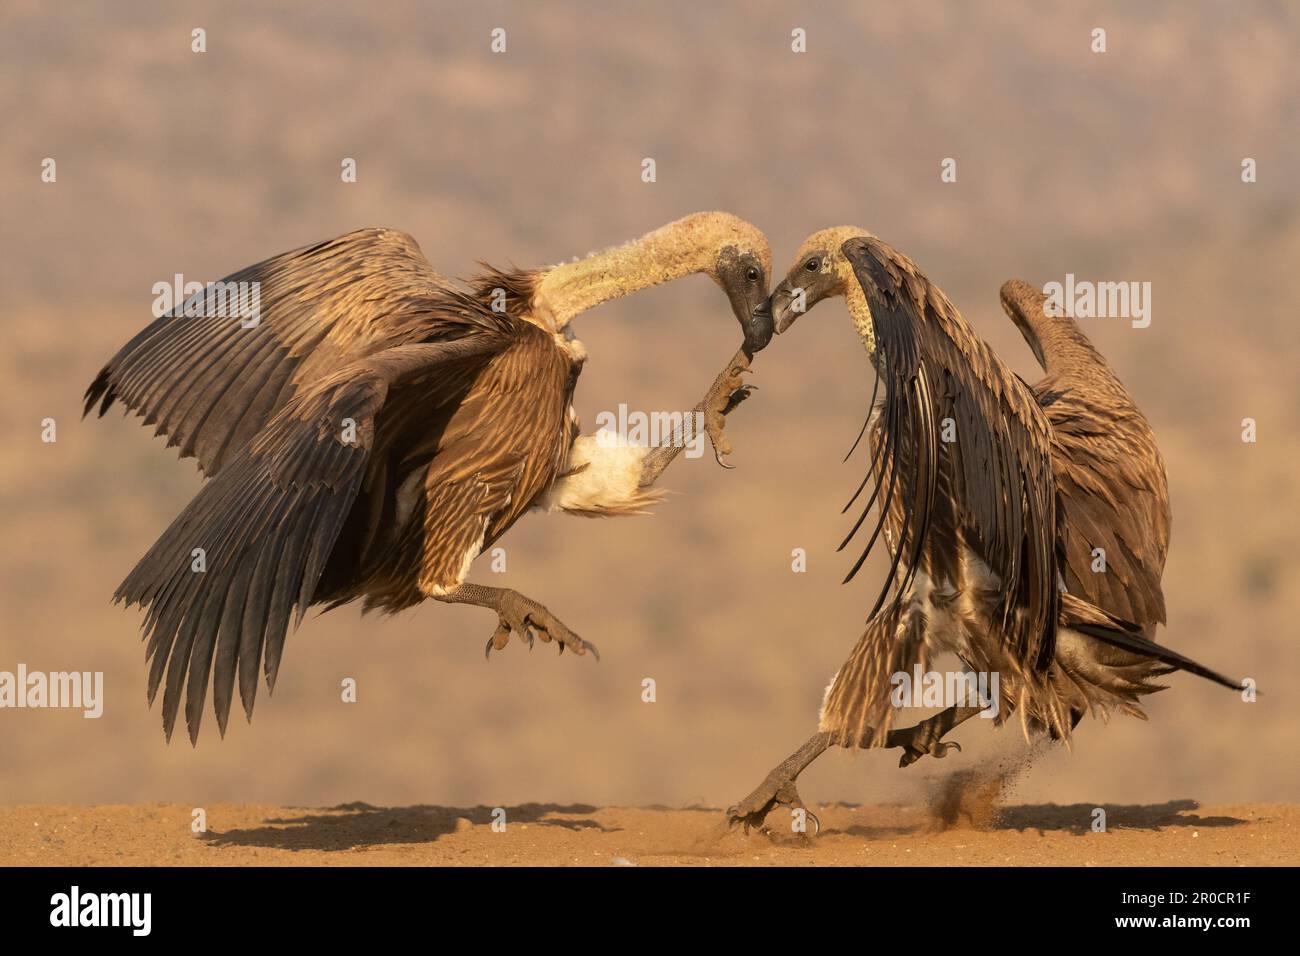 Whitebacked vultures (Gyps africanus) squabbling, Zimanga game reserve, KwaZulu-Natal, South Africa Stock Photo